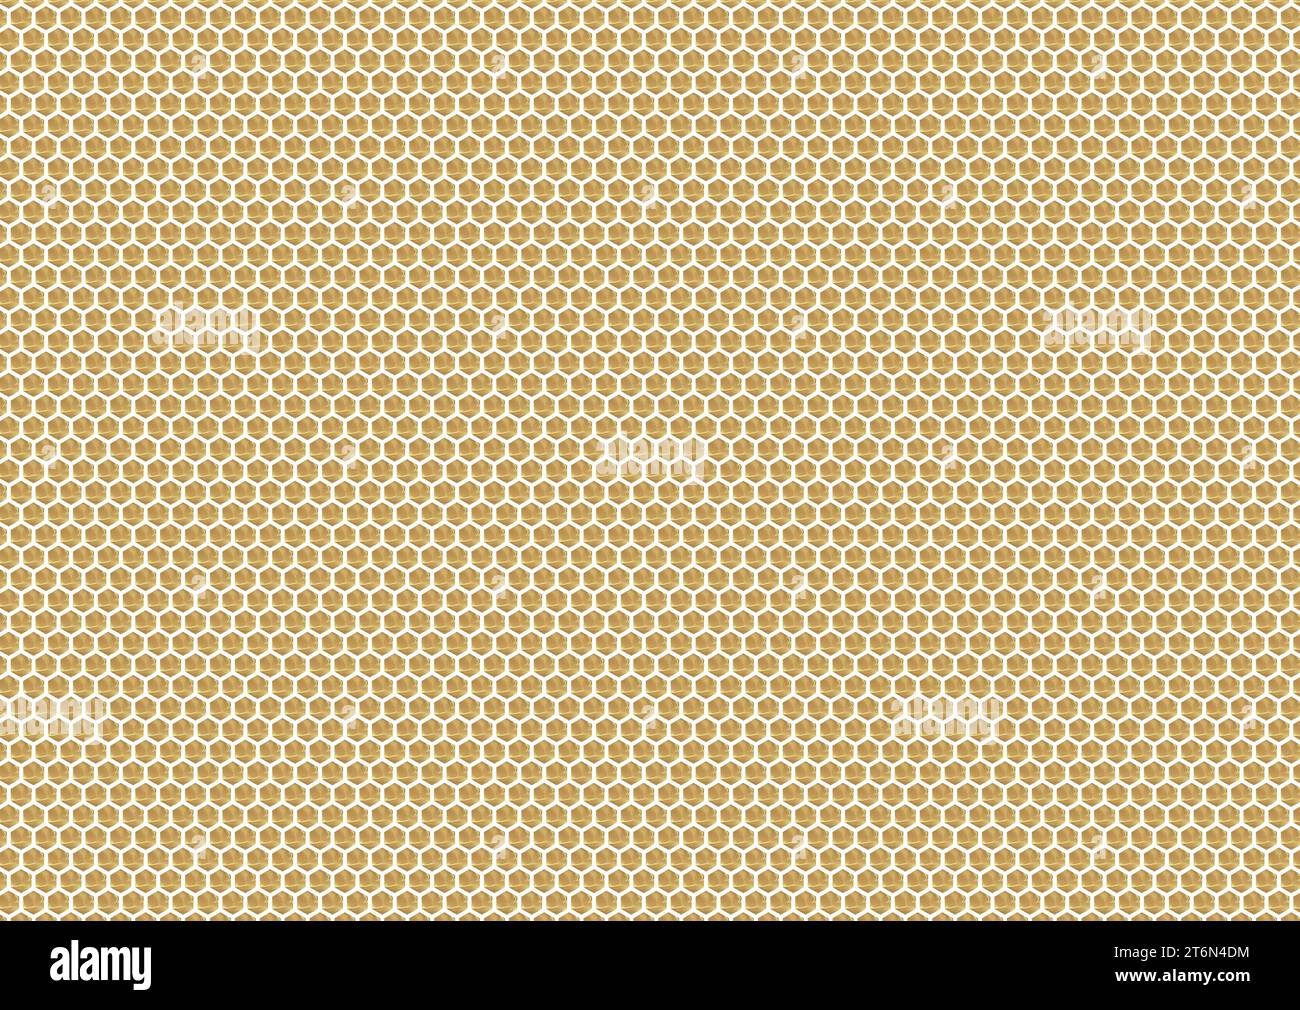 Une représentation abstraite d'un nid d'abeille avec un motif hexagonal frappant, des cloisons blanches, et des cellules de couleur miel, chacune contenant un liquide doux Banque D'Images